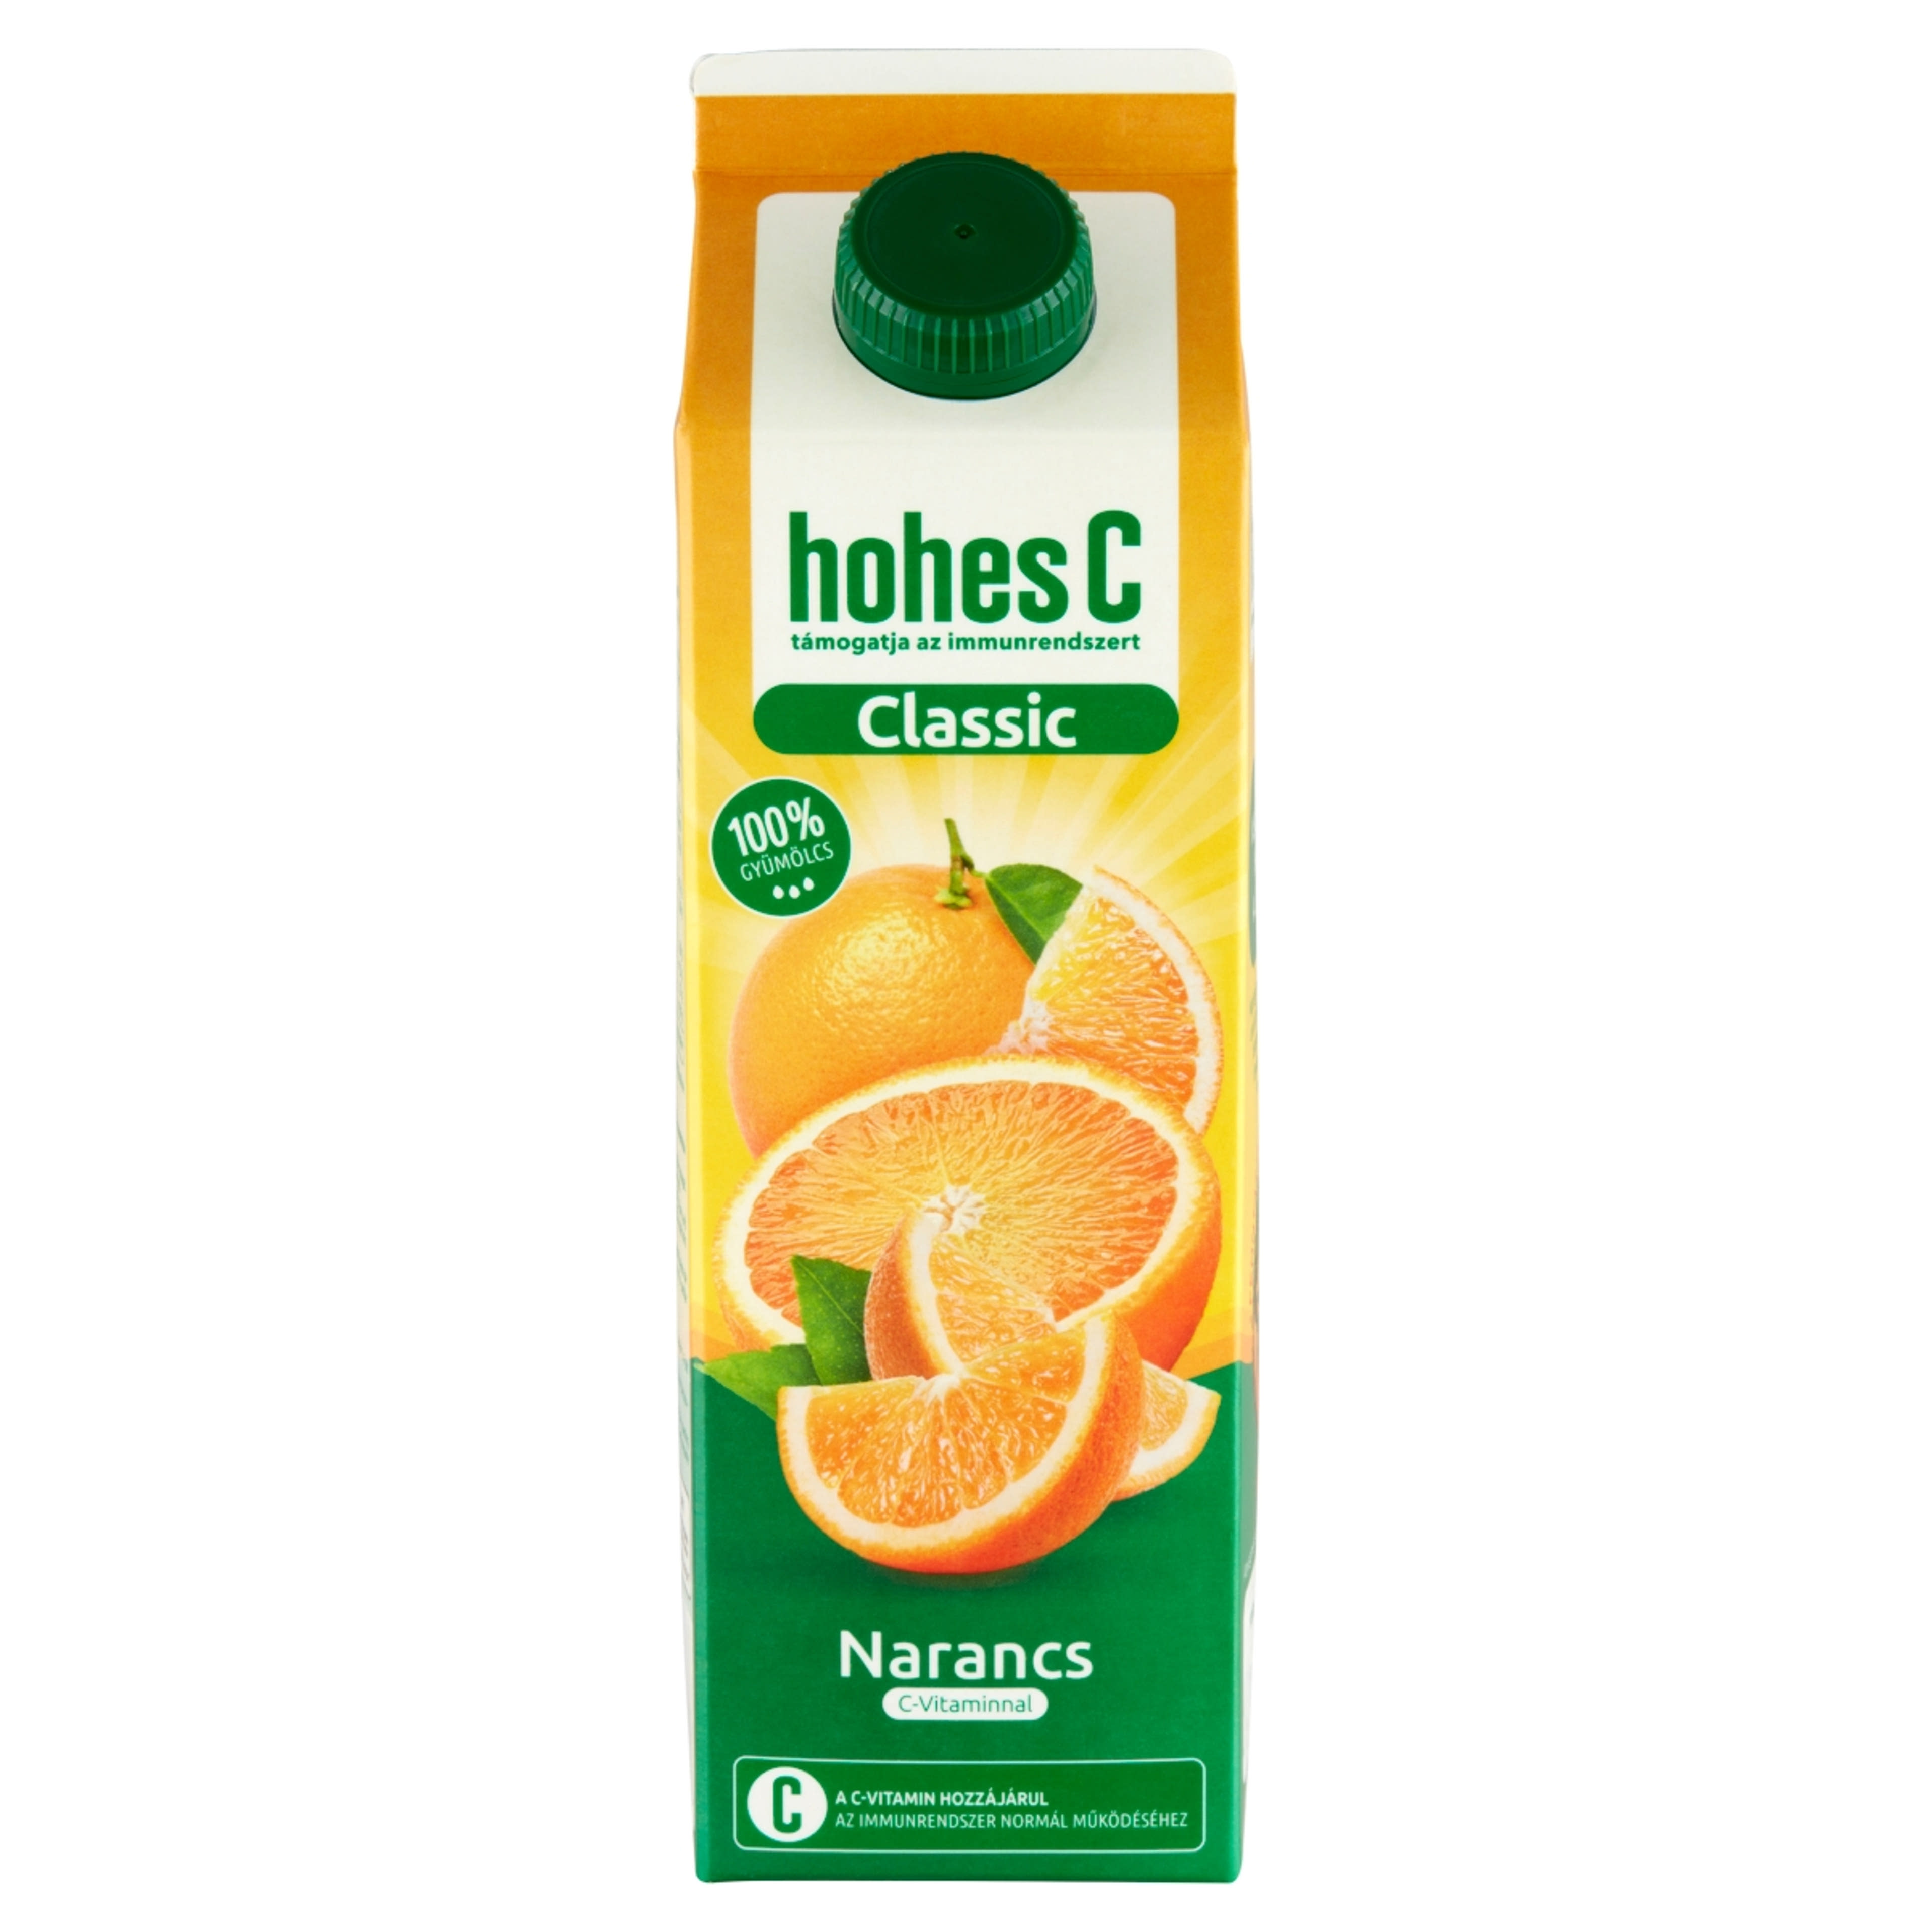 Hohes C narancs 100% - 1L-2